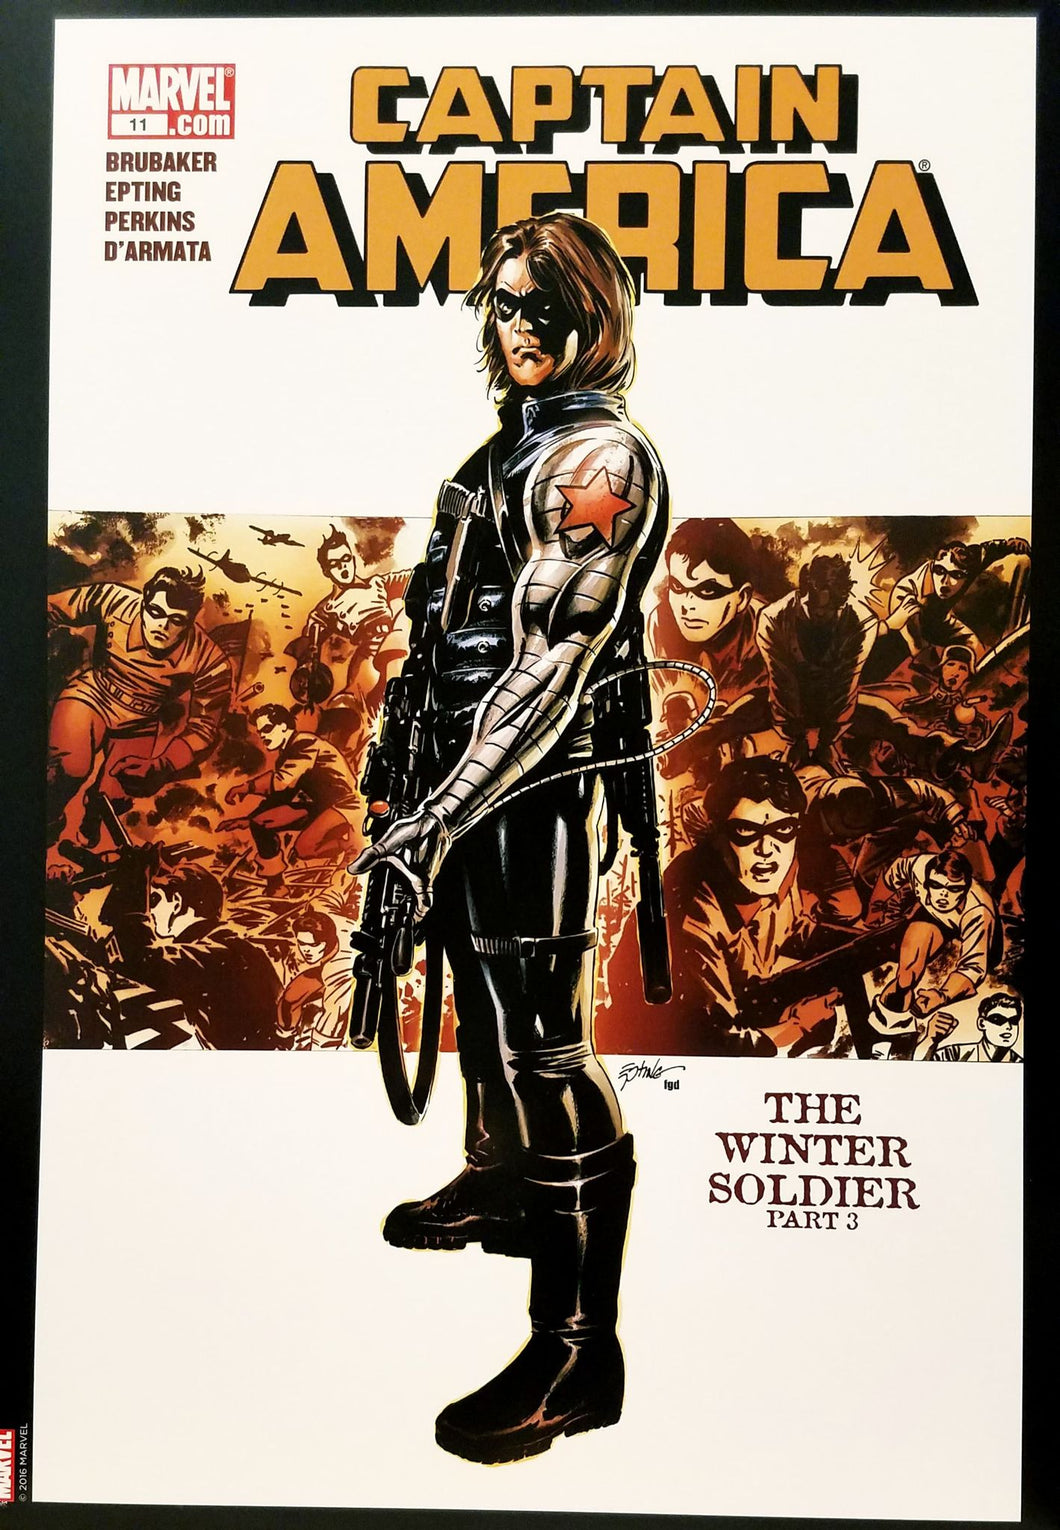 Captain America #11 12x16 FRAMED Art Poster Print by Steve Epting, Marvel Comics